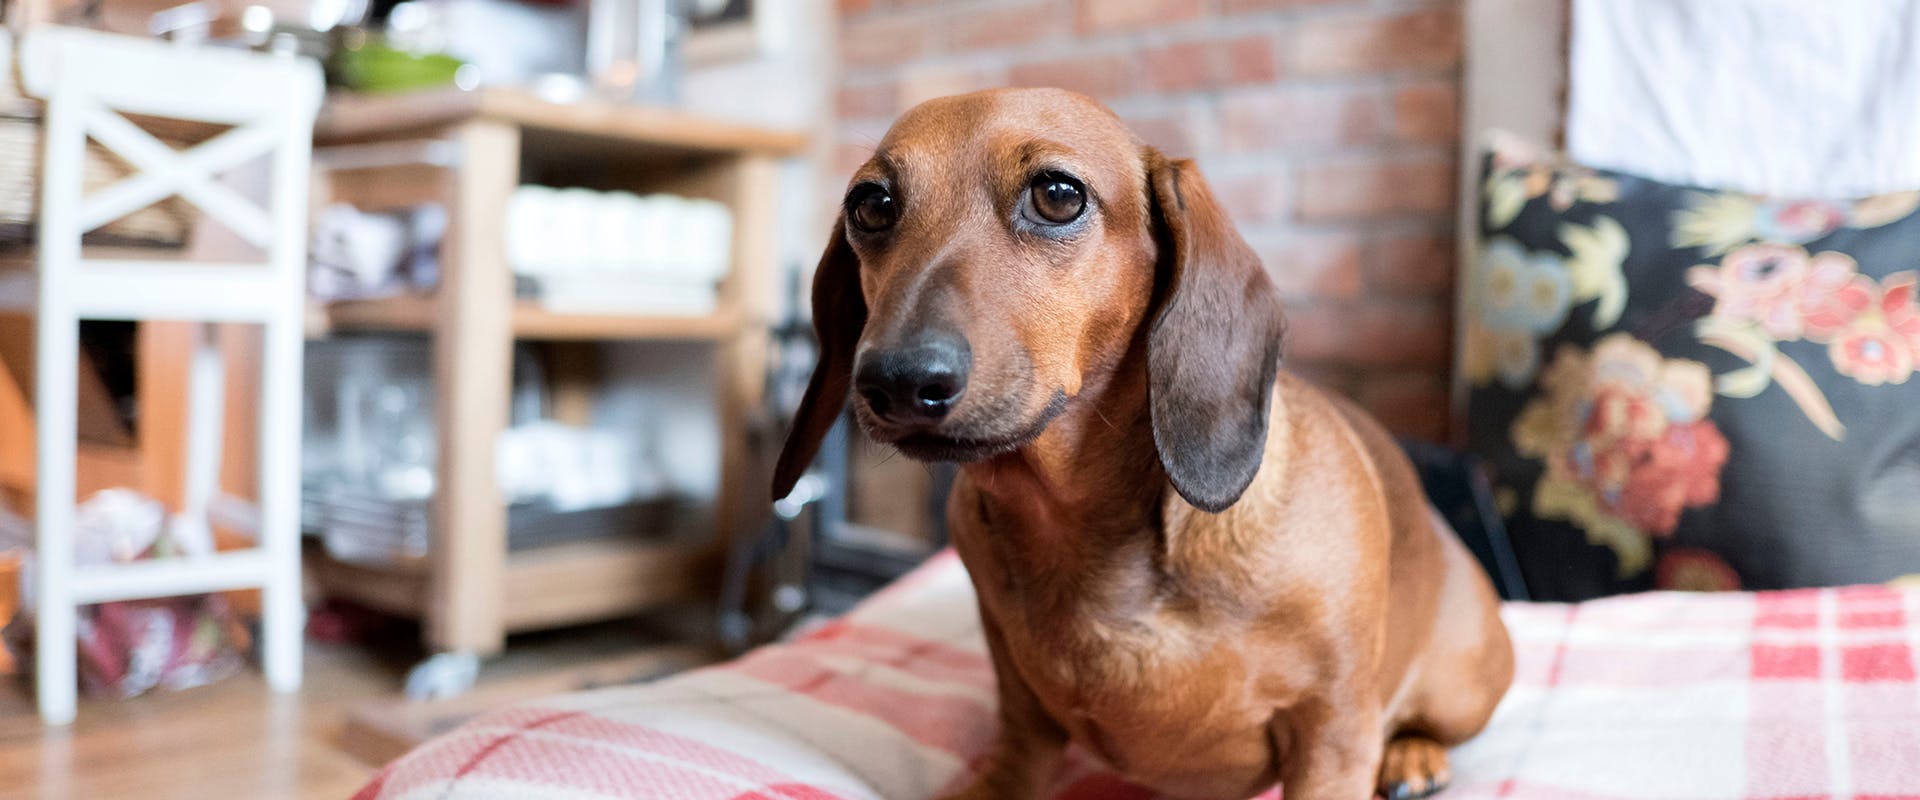 A Dachshund puppy sitting in a home, sitting on a plush tartan blanket 